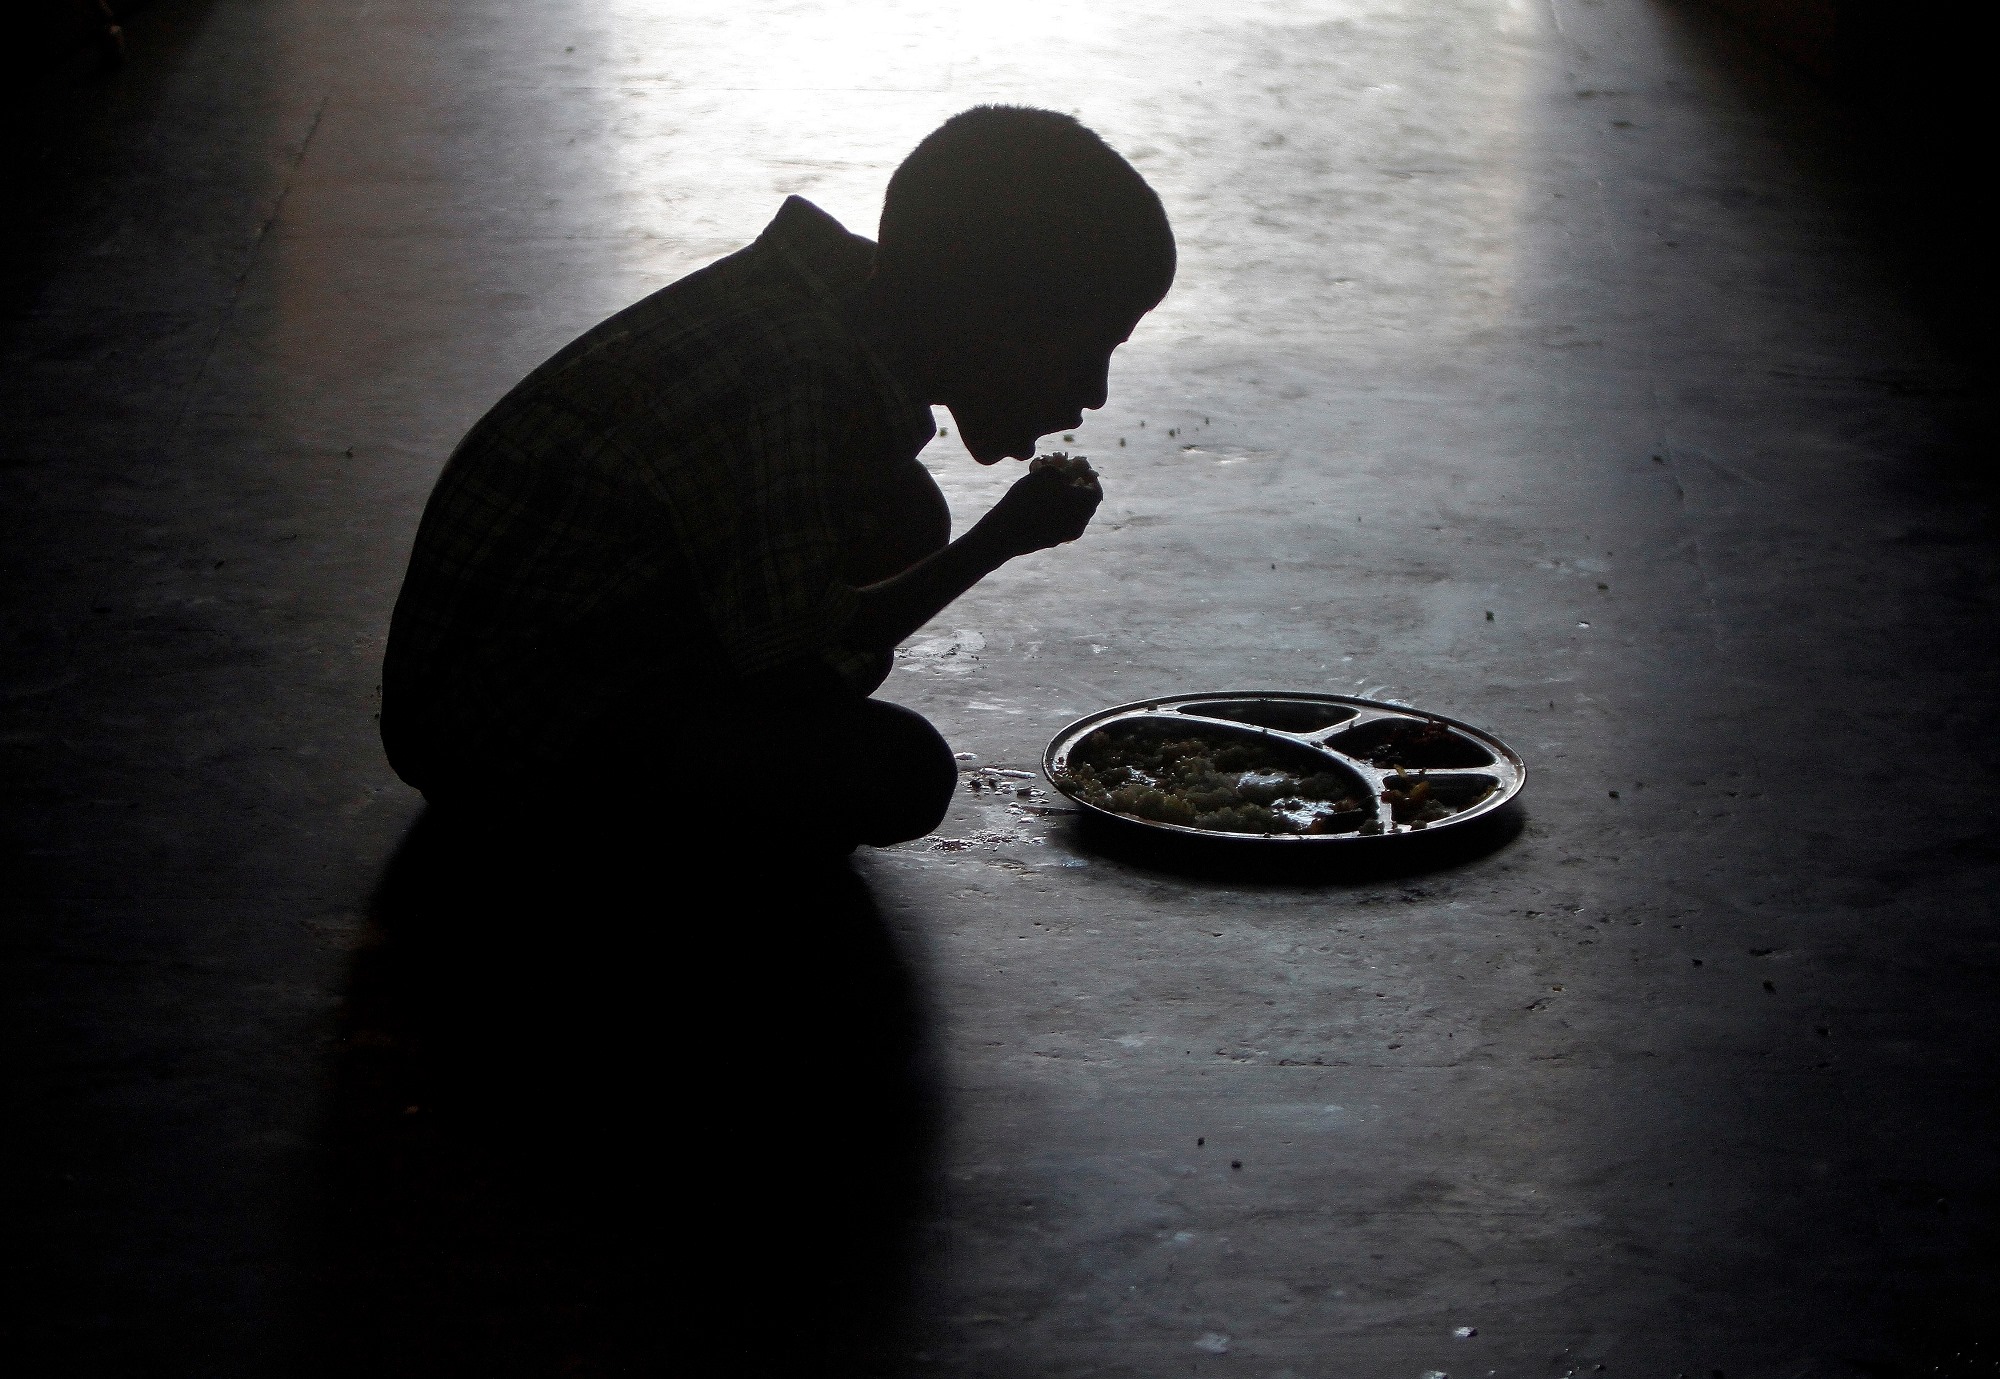 भारत में 33 लाख से अधिक बच्चे कुपोषण का शिकार, 17.7 लाख अत्यंत कुपोषित: सरकारी आंकड़े